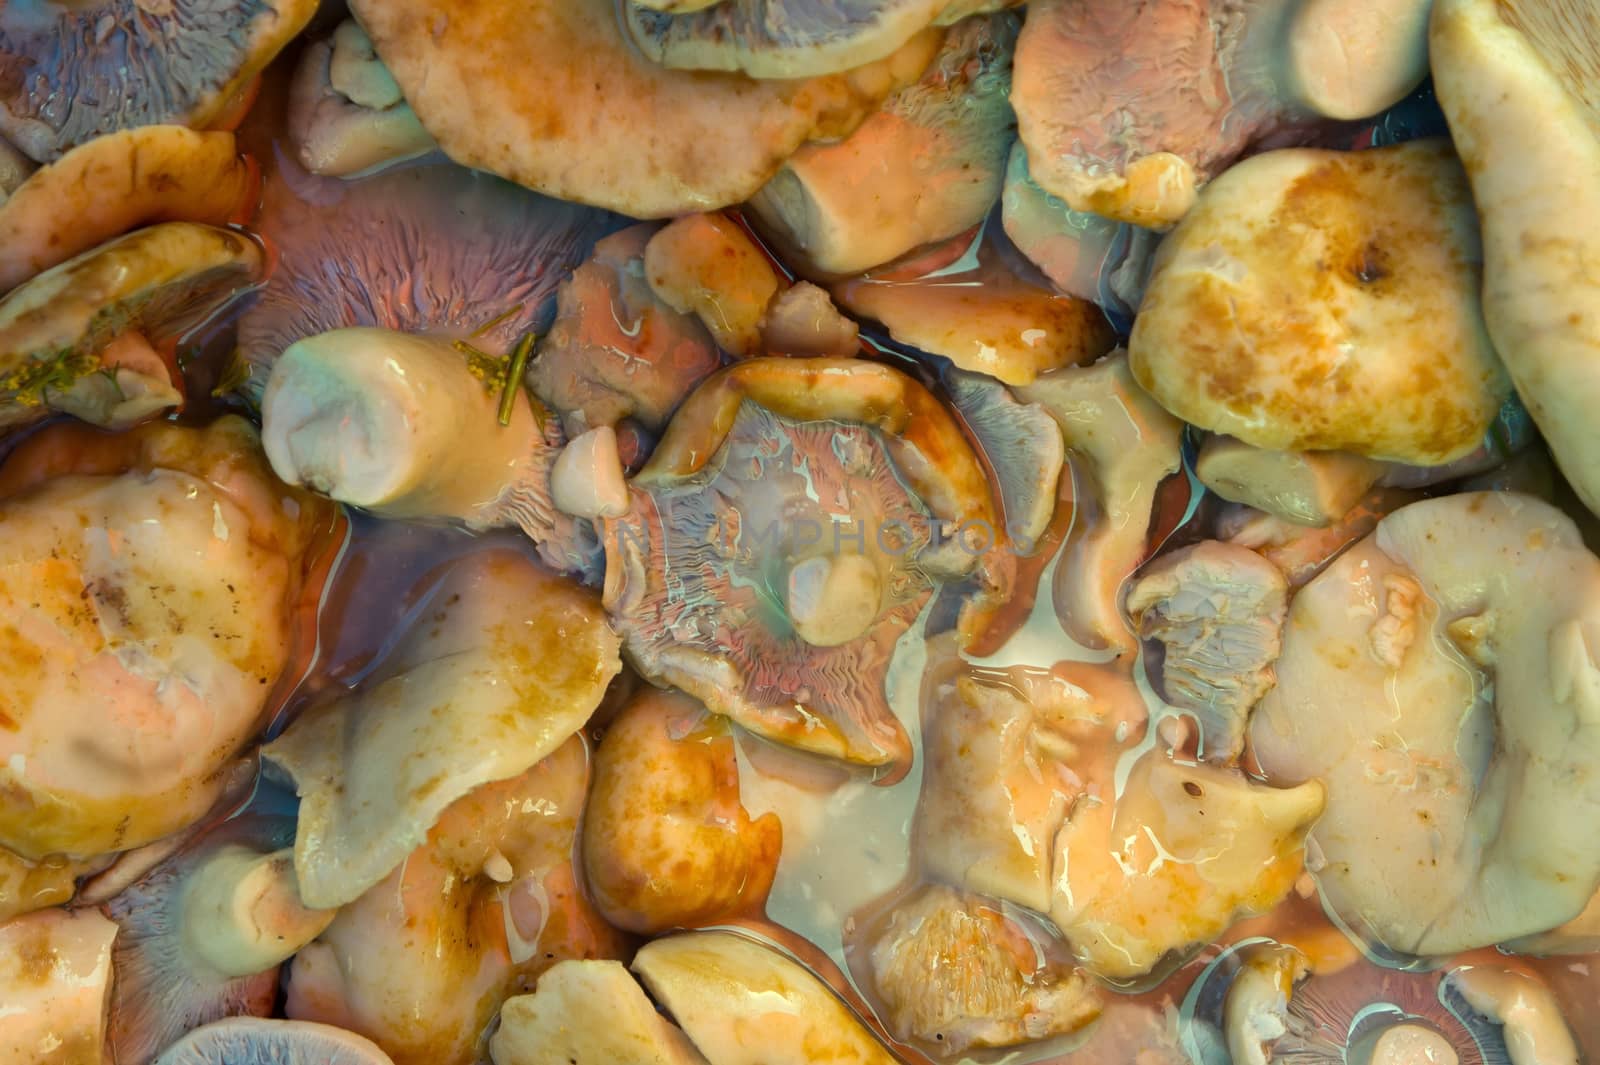 Pickled mushroom background by Venakr